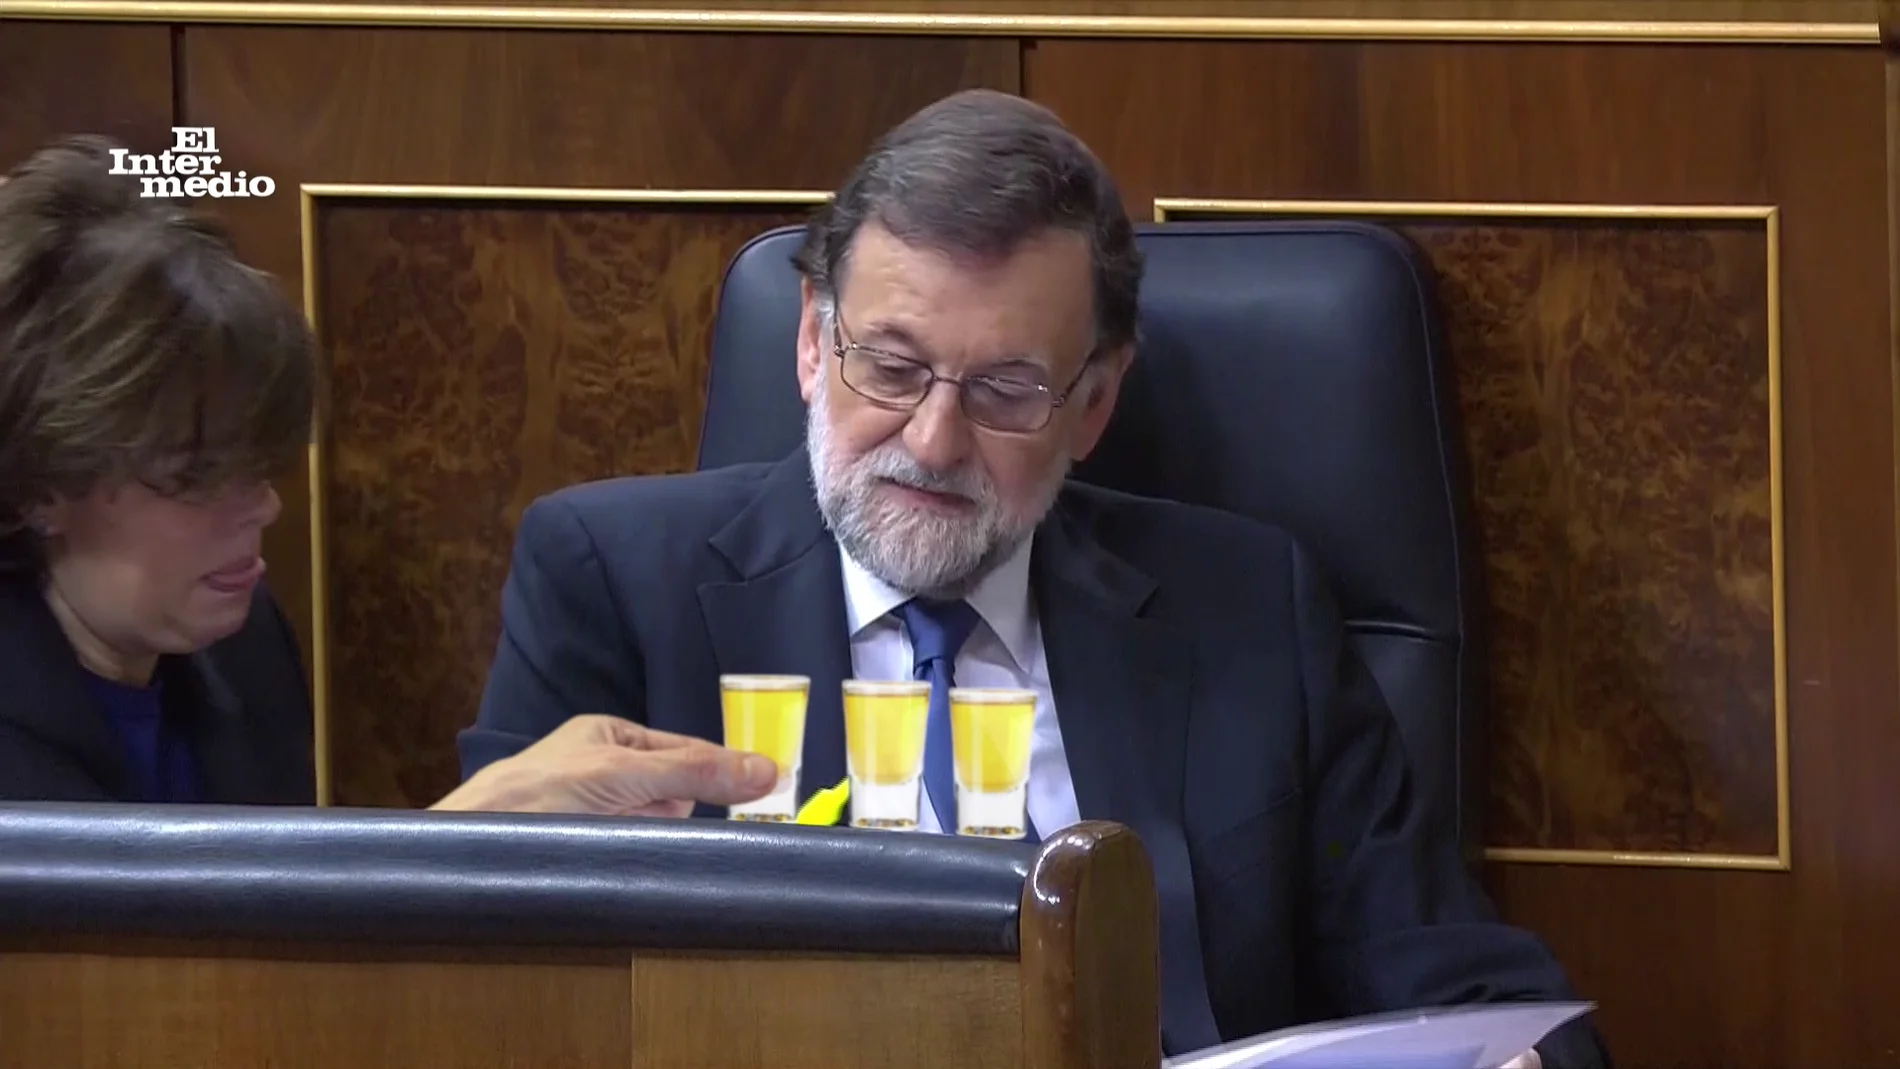 Vídeos manipulados, Soraya Sáenz de Santamaría y Mariano Rajoy